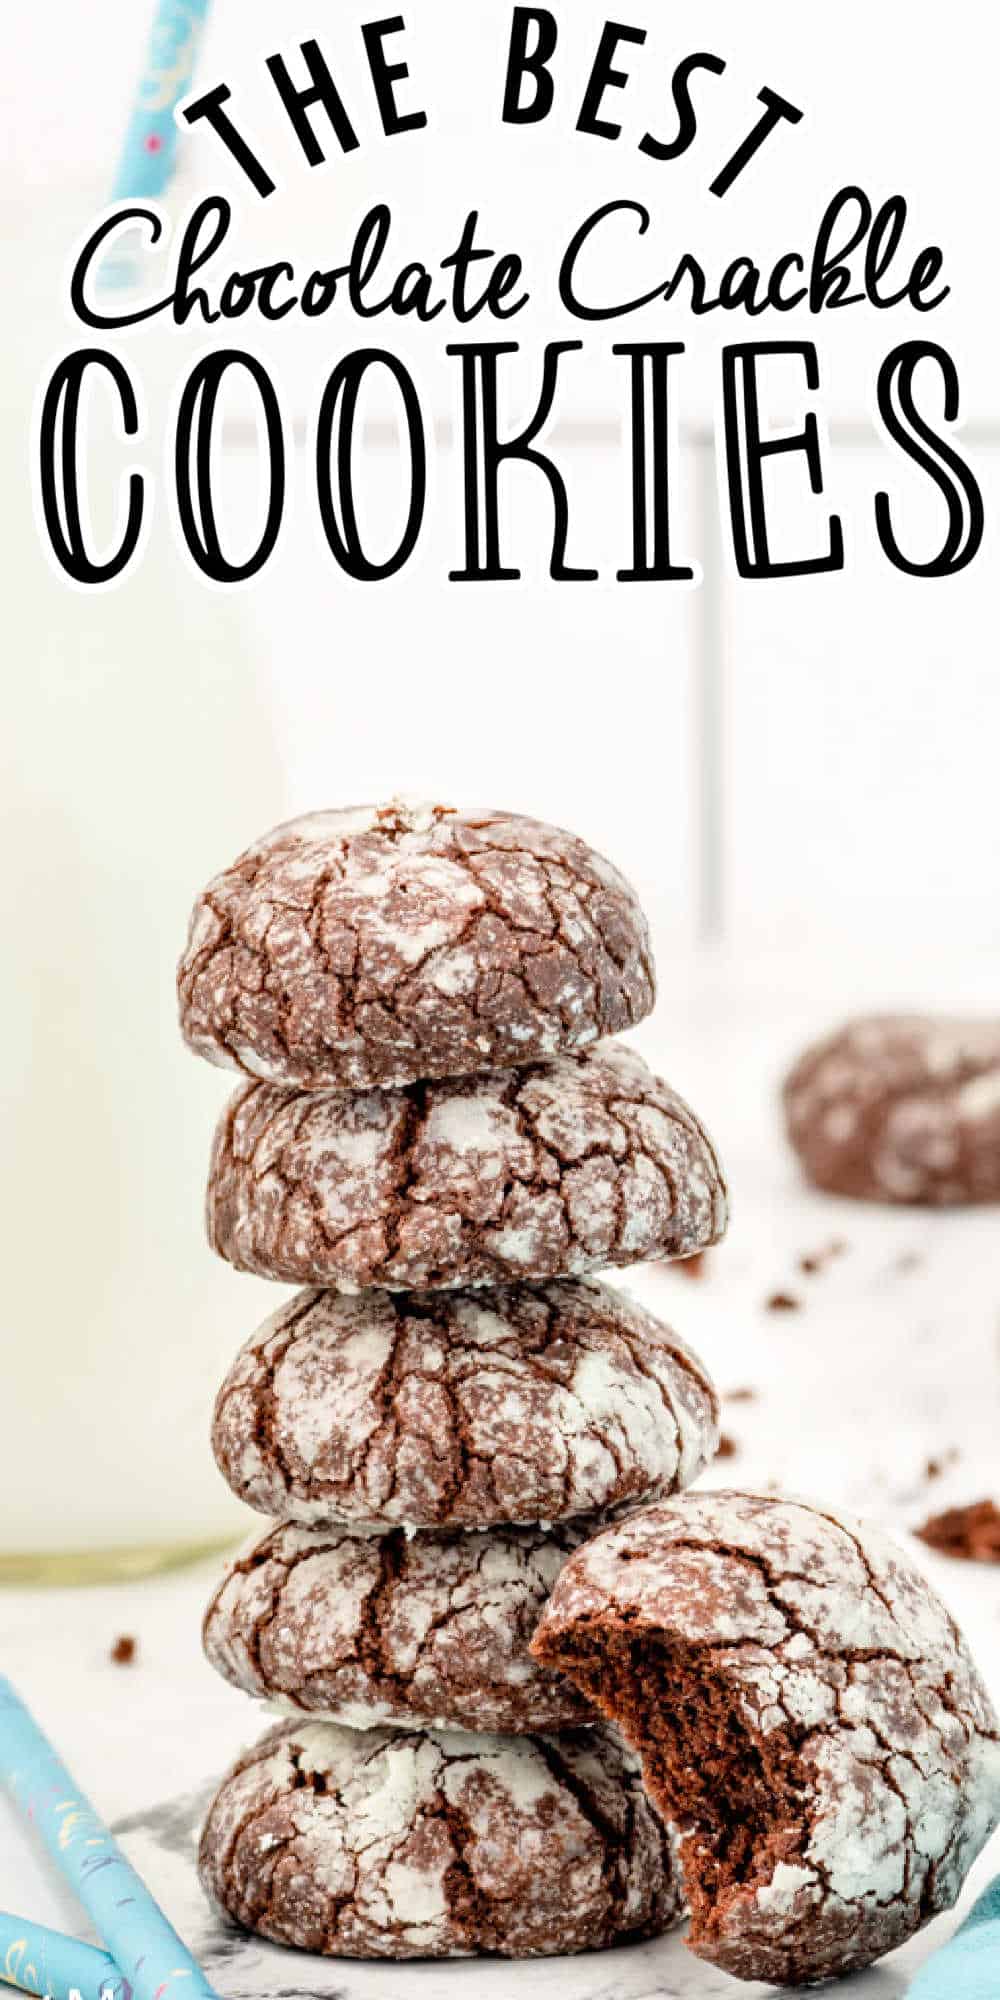 Chocolate Crinkle Cookies Recipe (Chocolate Crackle Cookies)